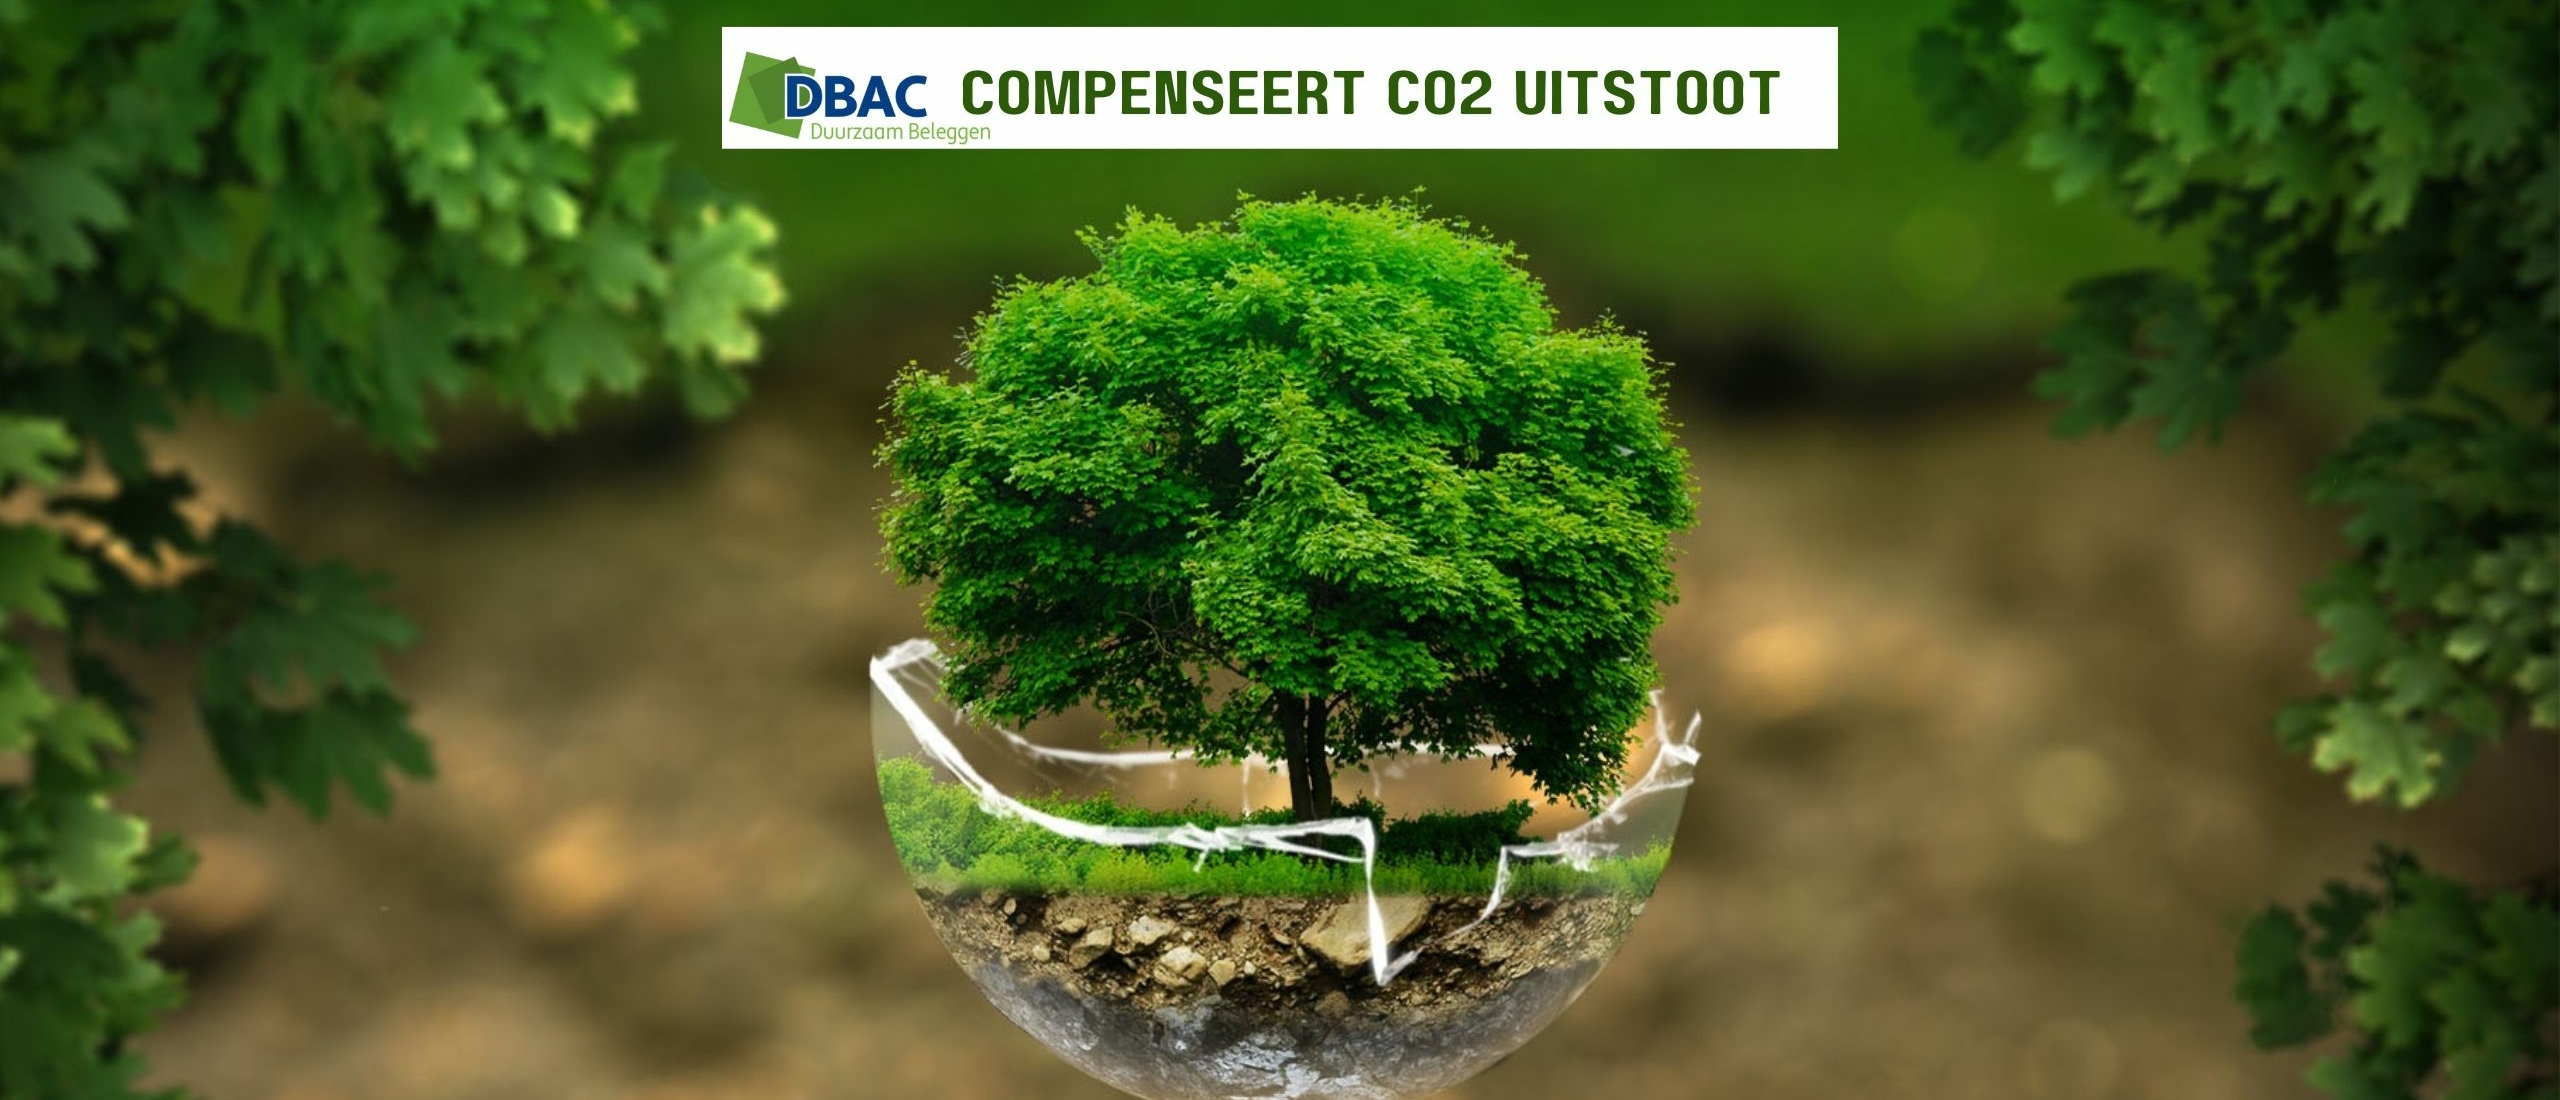 DBAC compenseert CO2 uitstoot